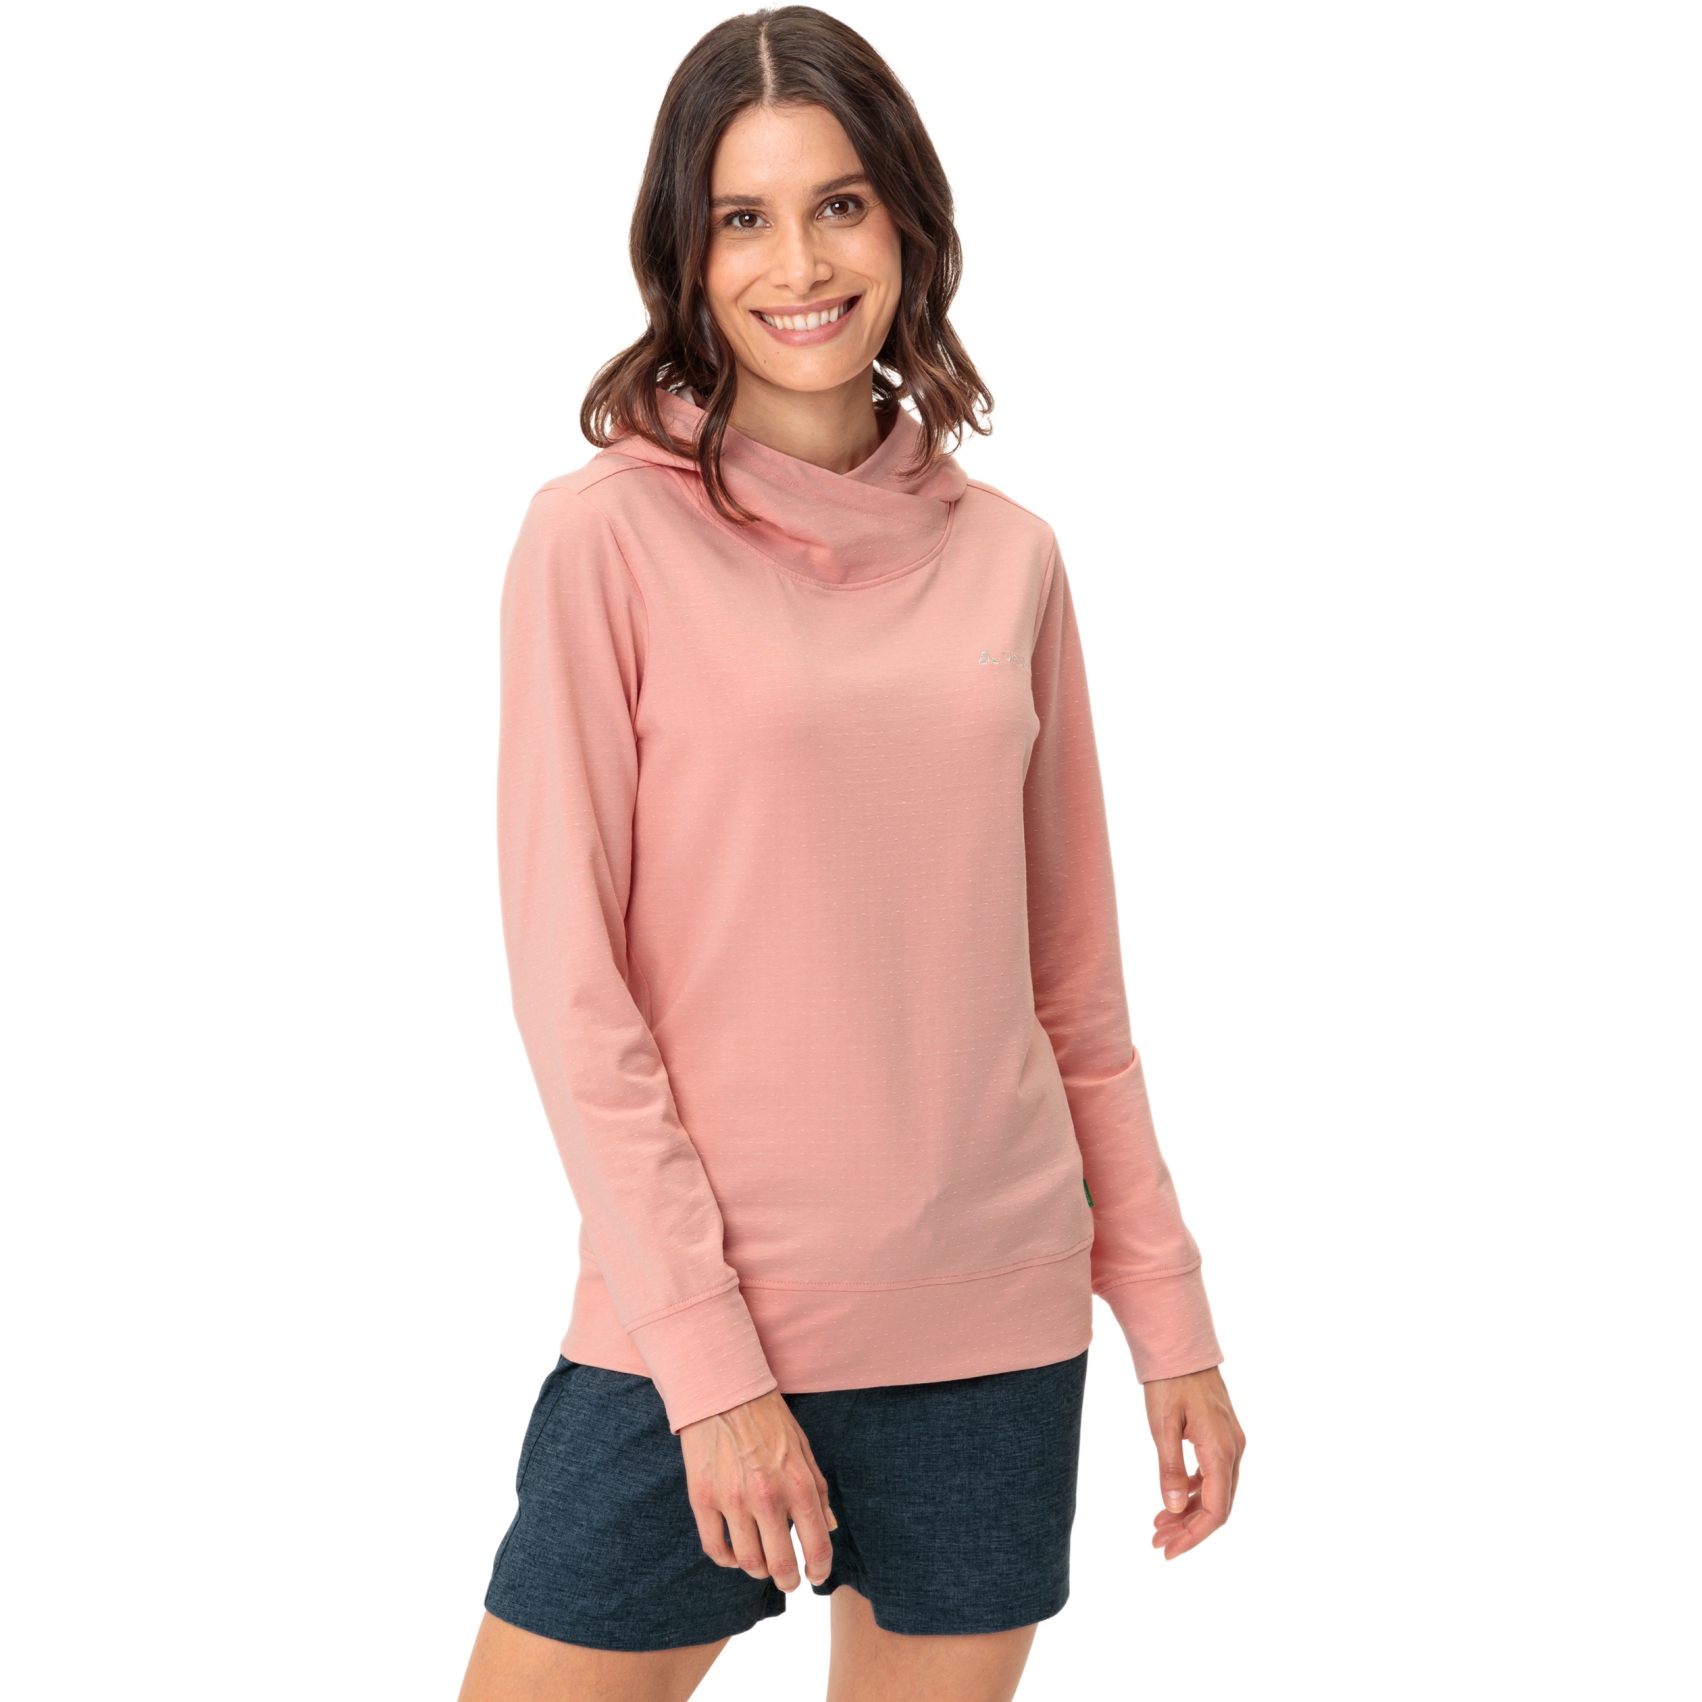 Produktbild von Vaude Tuenno Sweatshirt Damen - soft rose